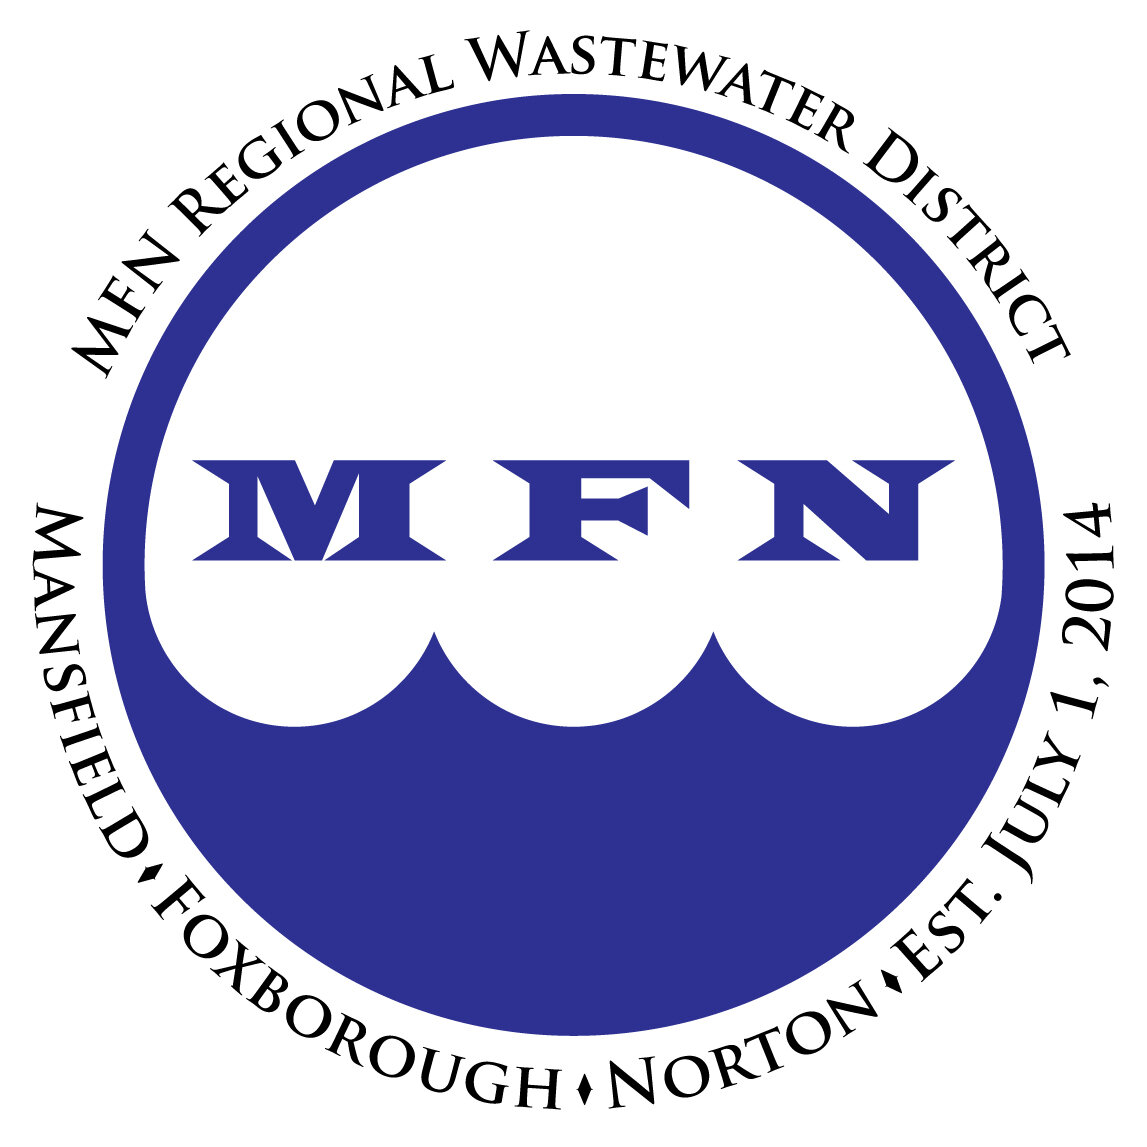 MFN Regional Wastewater District